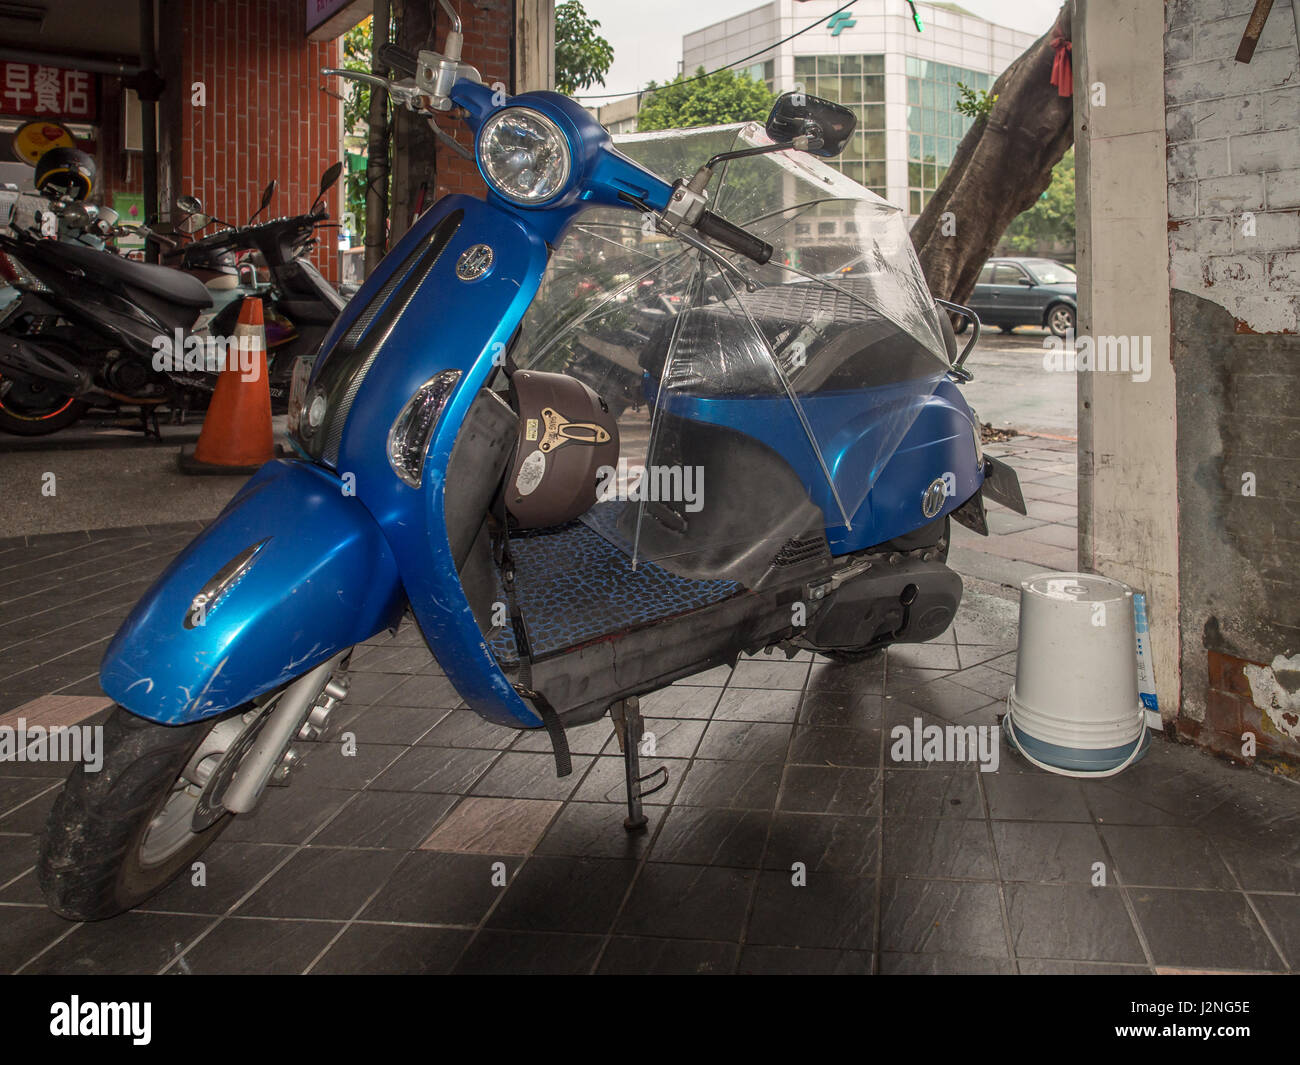 Taipei, Taiwan - October 08, 2016: Blue motorbike on the streets of Taipei Stock Photo